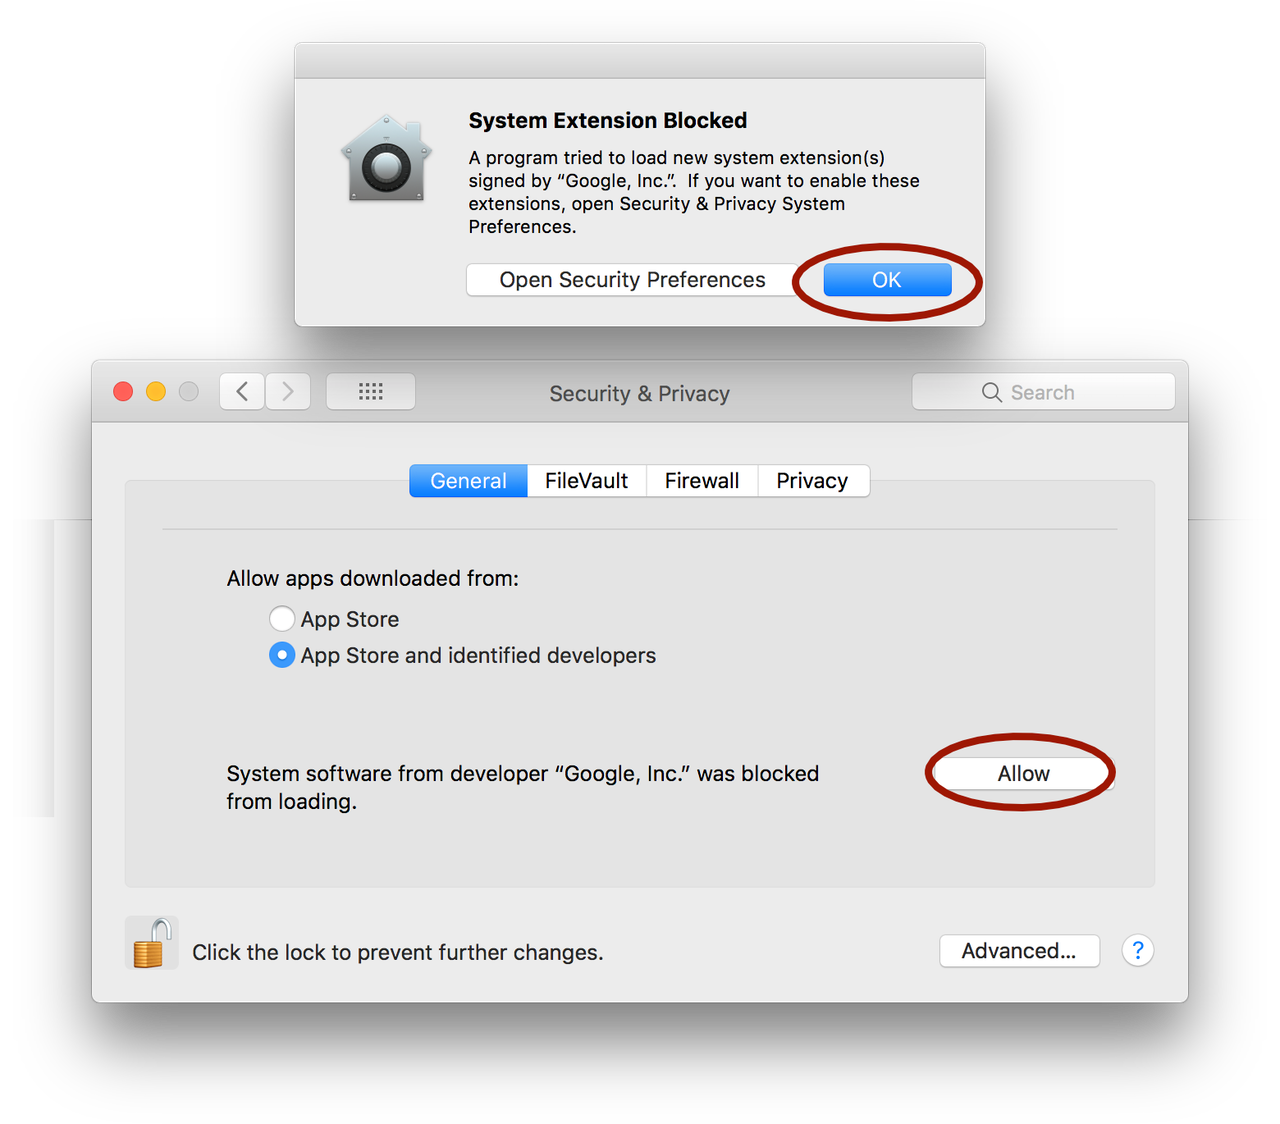 google desktop uploader for mac